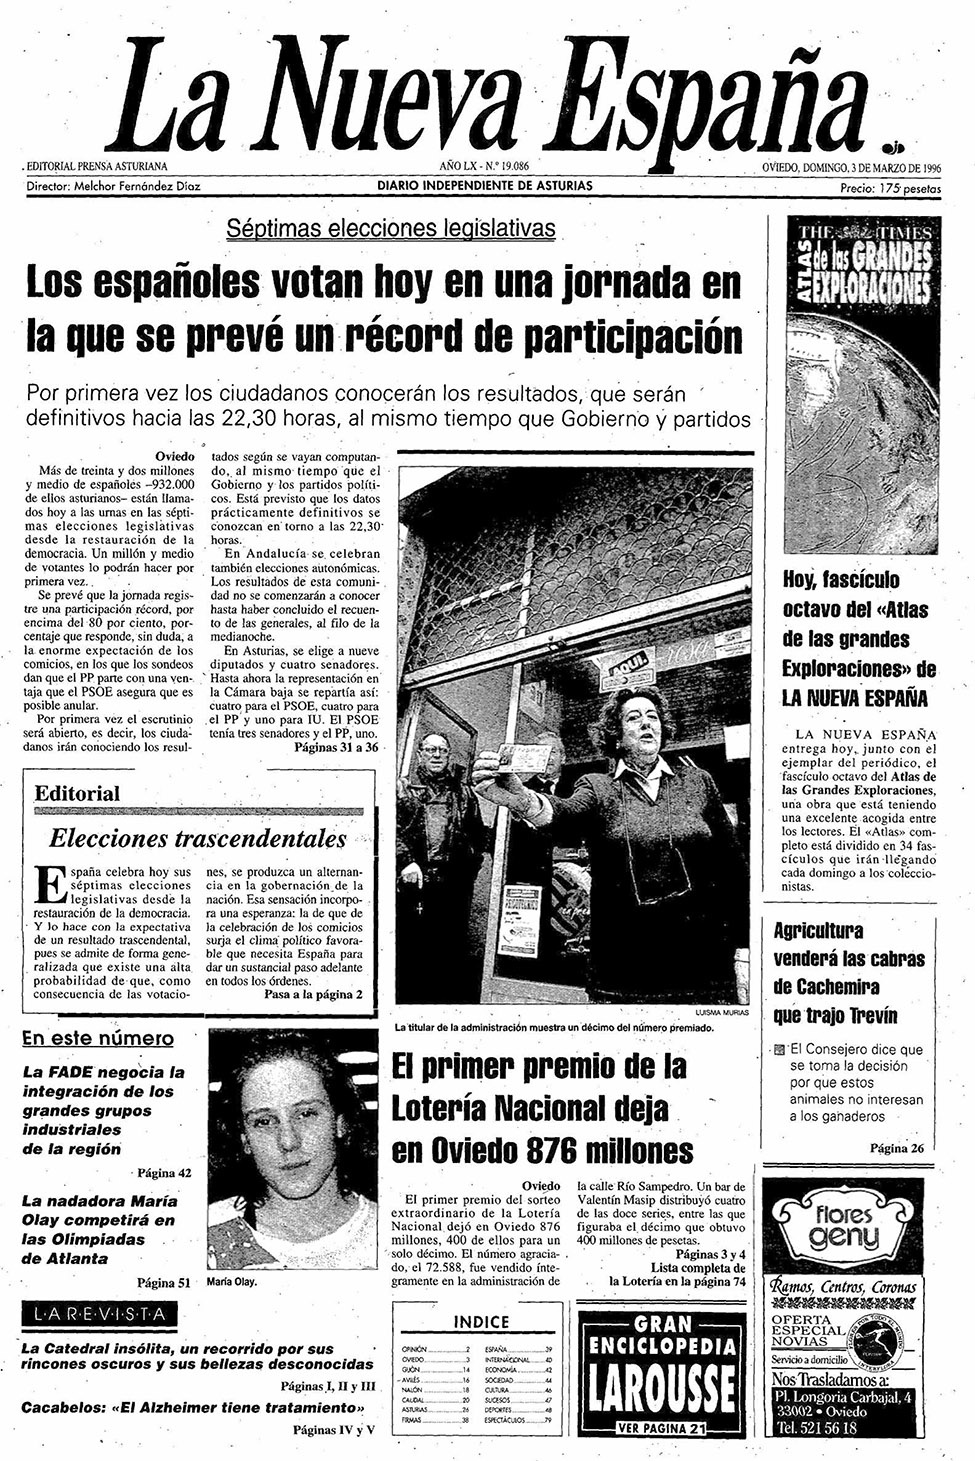 Portada del Domingo, 3 de Marzo de 1996